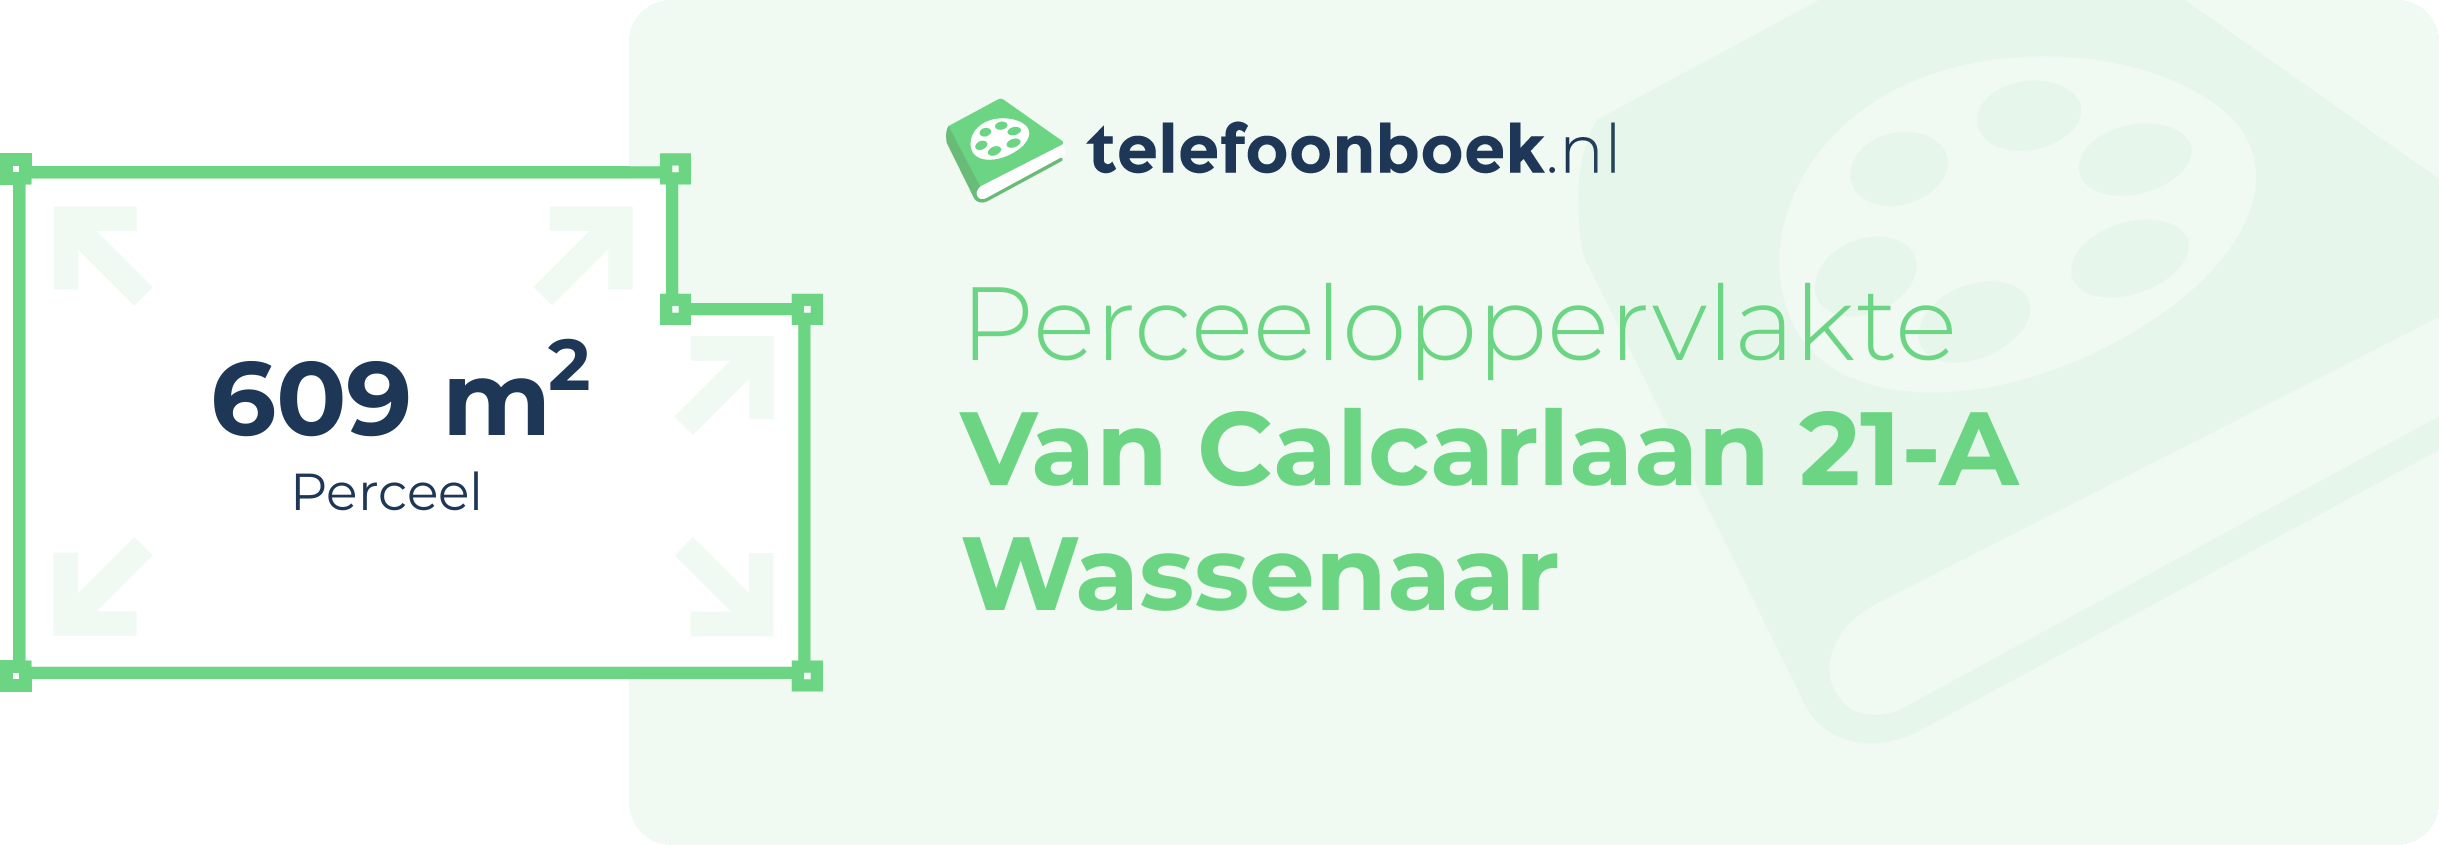 Perceeloppervlakte Van Calcarlaan 21-A Wassenaar